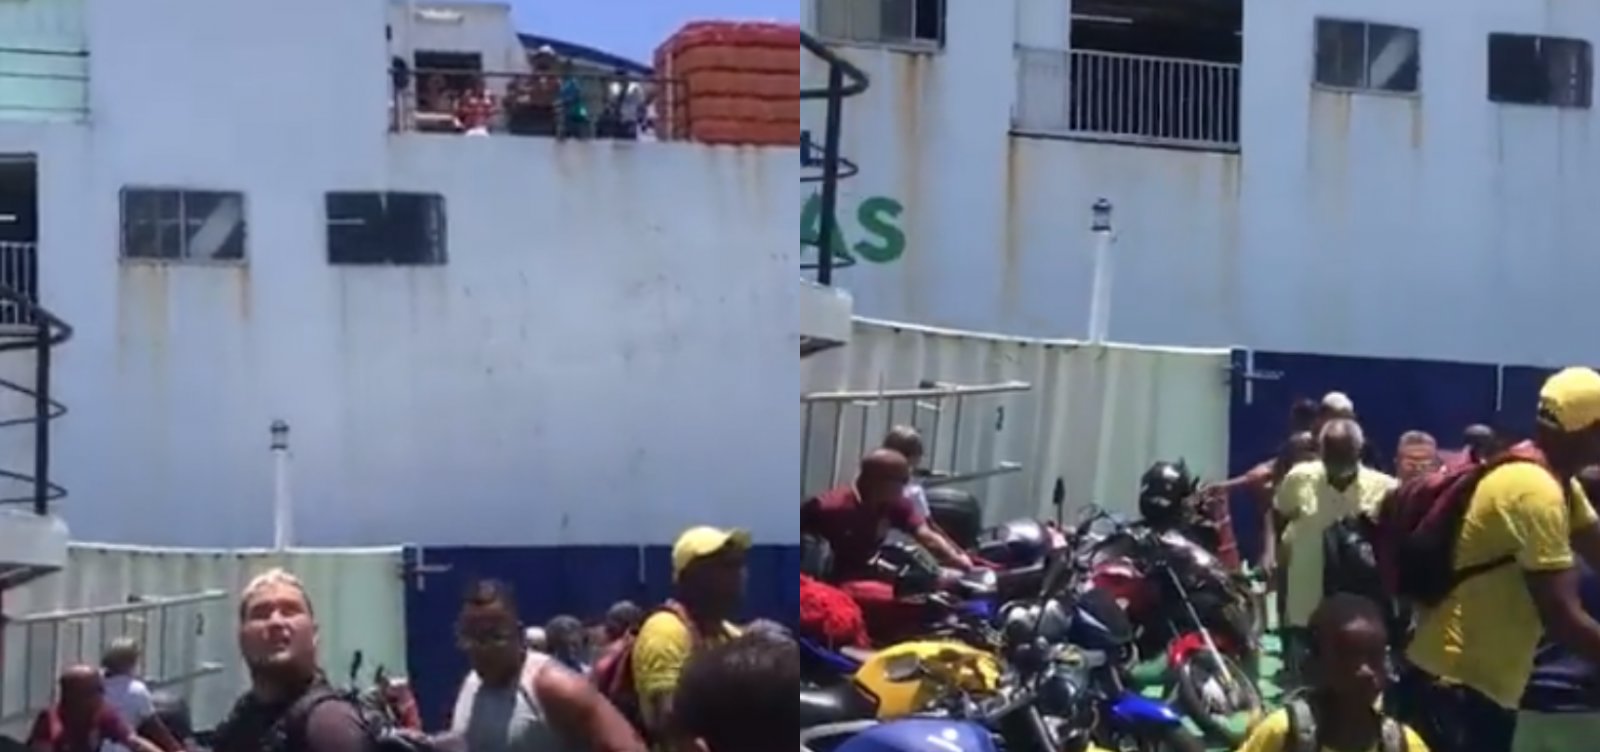 Ferries se chocam na Baía de Todos os Santos e acidente assusta passageiros